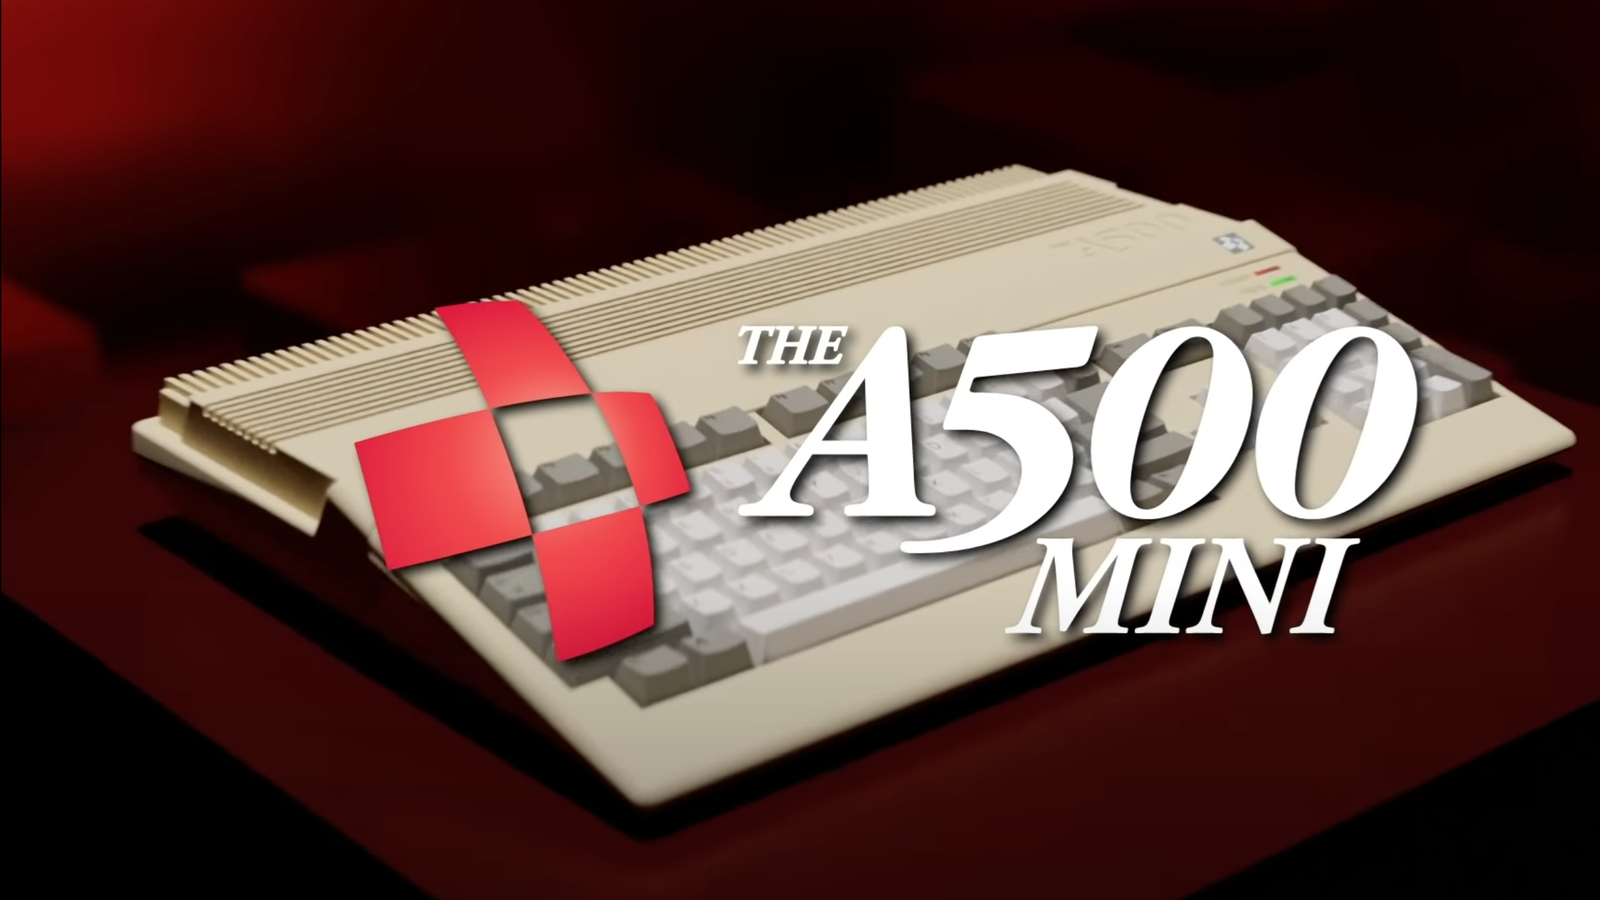 Versão miniaturizada do computador Amiga 500 será lançada em 2022